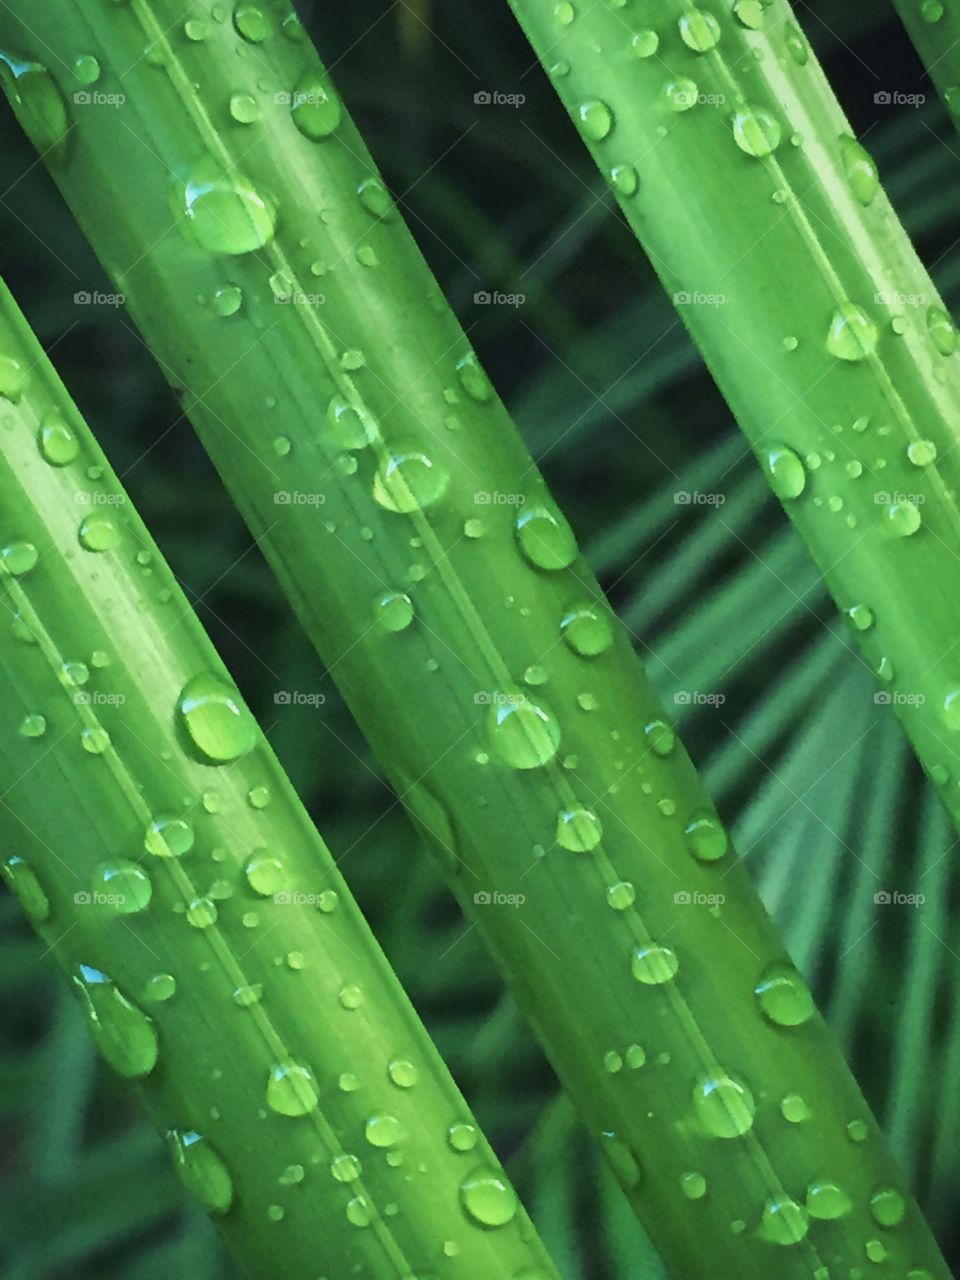 Freshly fallen rain on green palm fronds. 